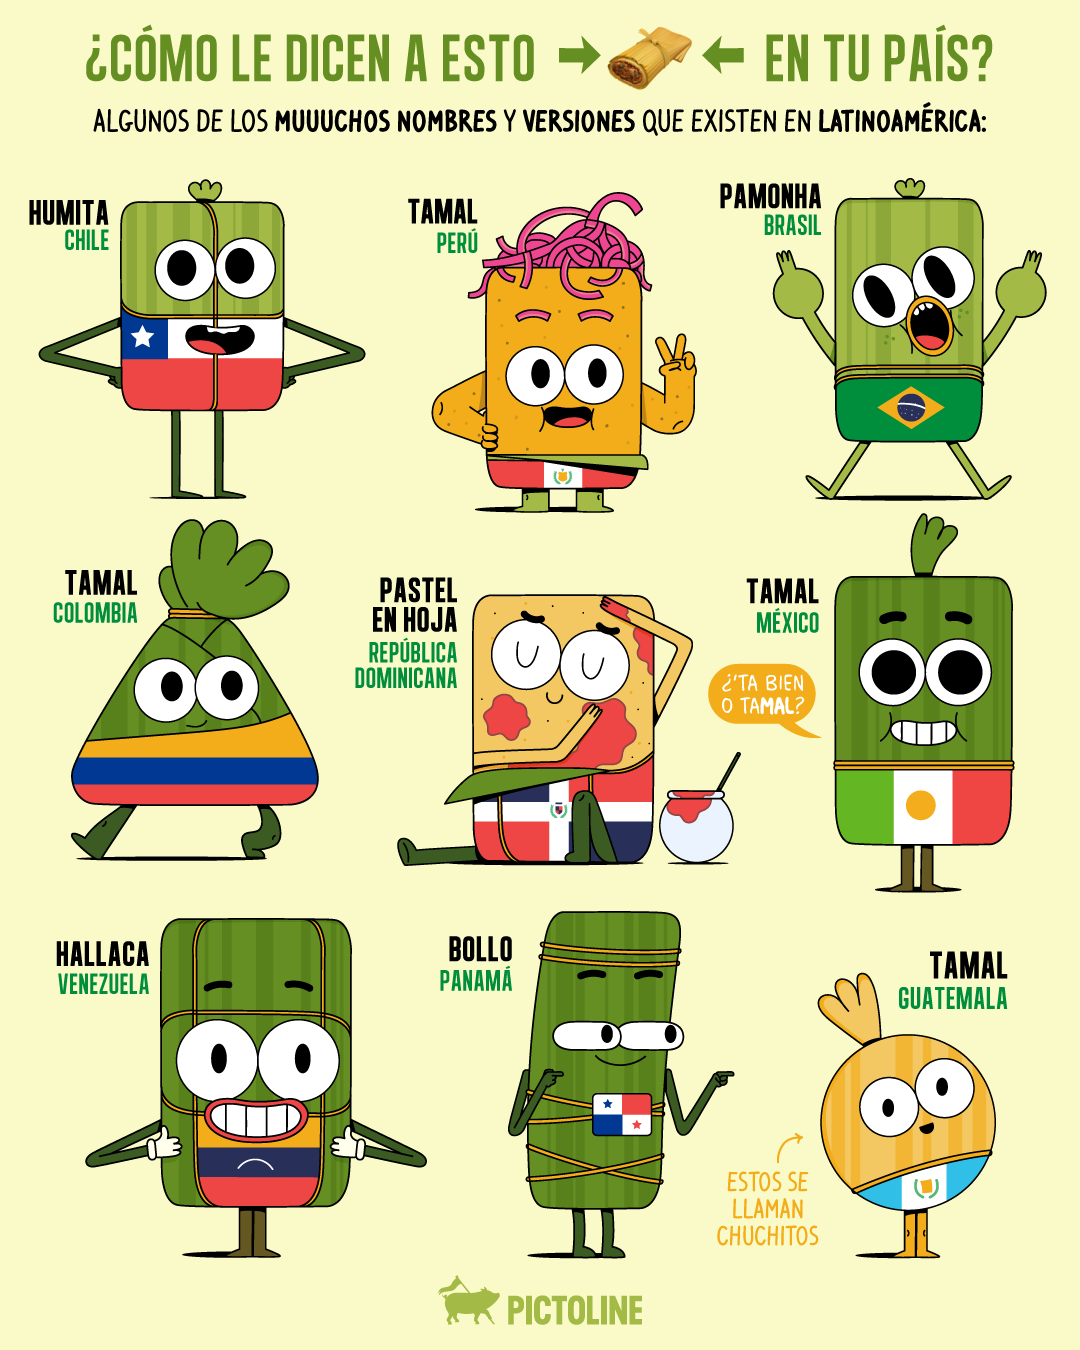 Tamales 🤤 humitas 😋 bollos 😁 y más 💛🙌 Algunos de los muuuchos nombres y versiones de los 🫔 en LATAM: